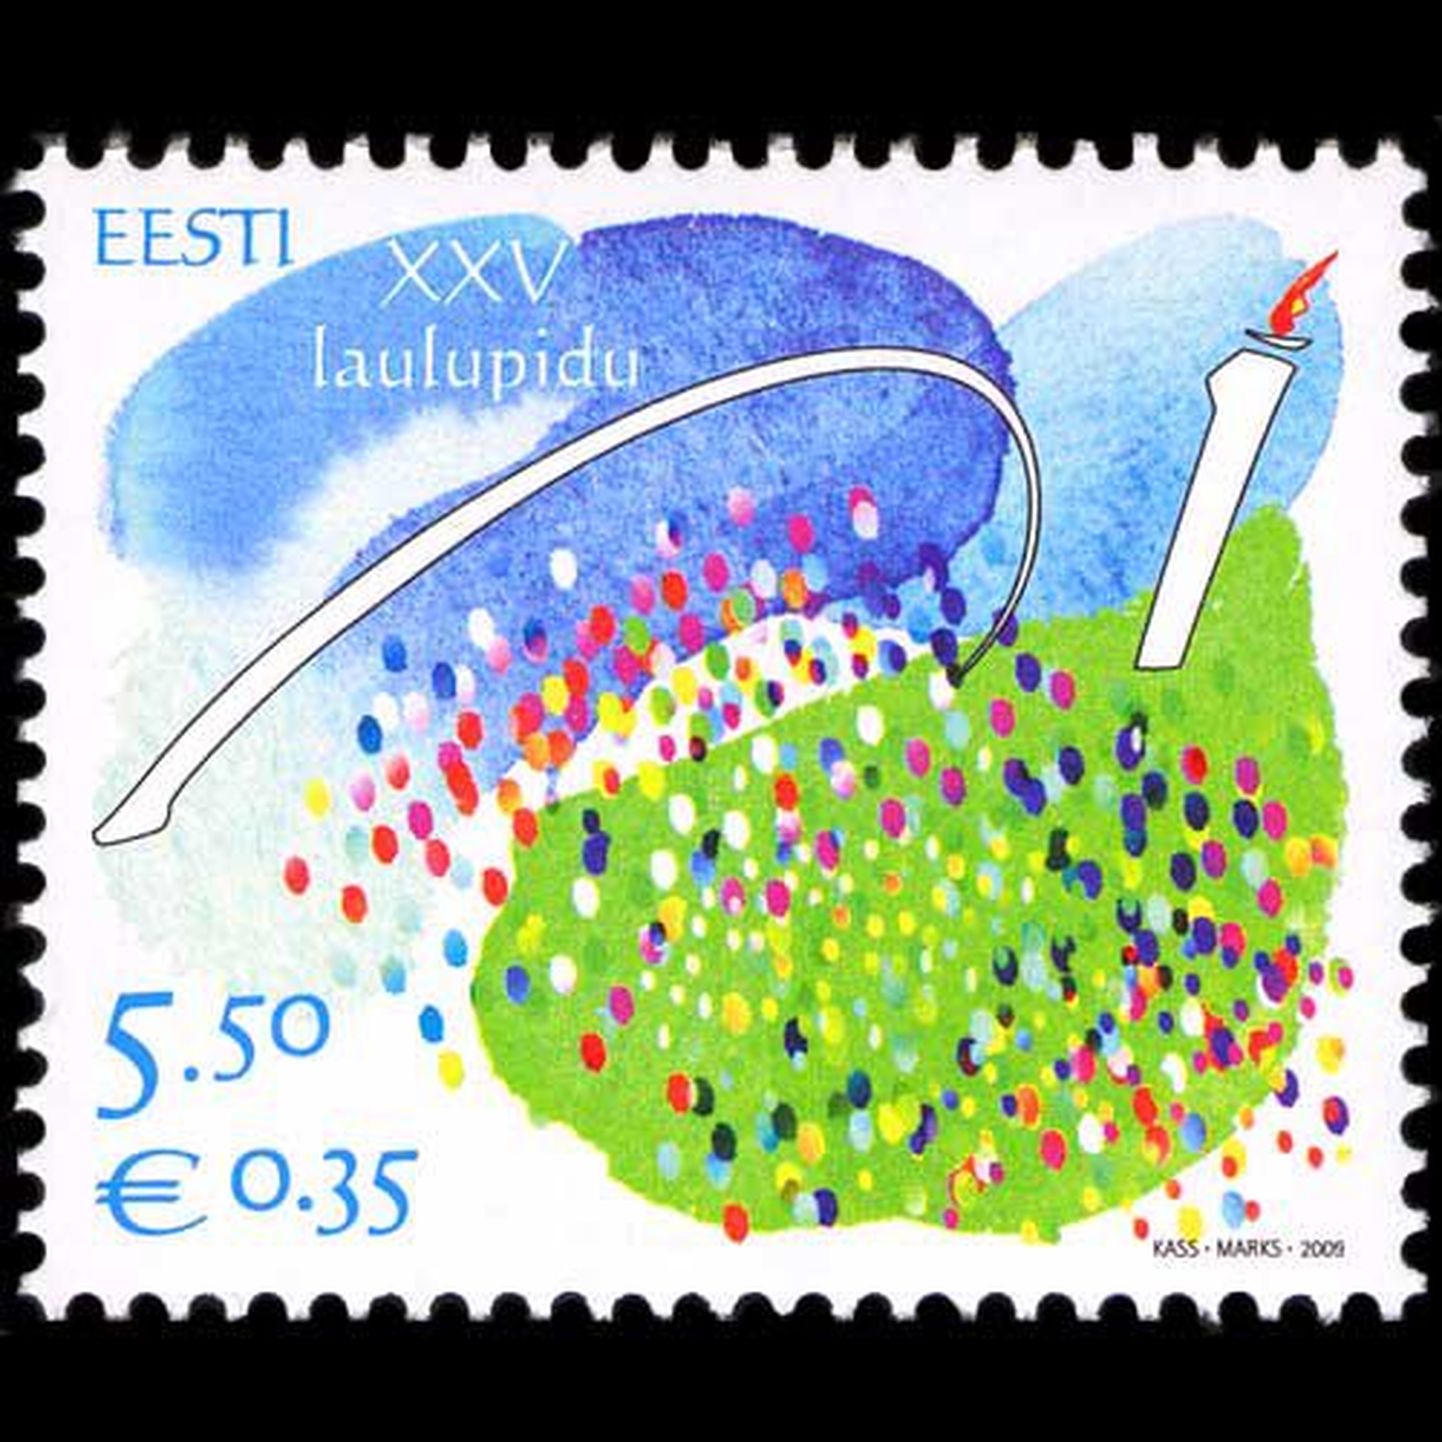 Laulupeole pühendatud postmark anti välja täpselt sel päeval, kui 140 aastat tagasi algas esimene laulupidu. Margi kujundasid Ülle Marks ja Jüri Kass.